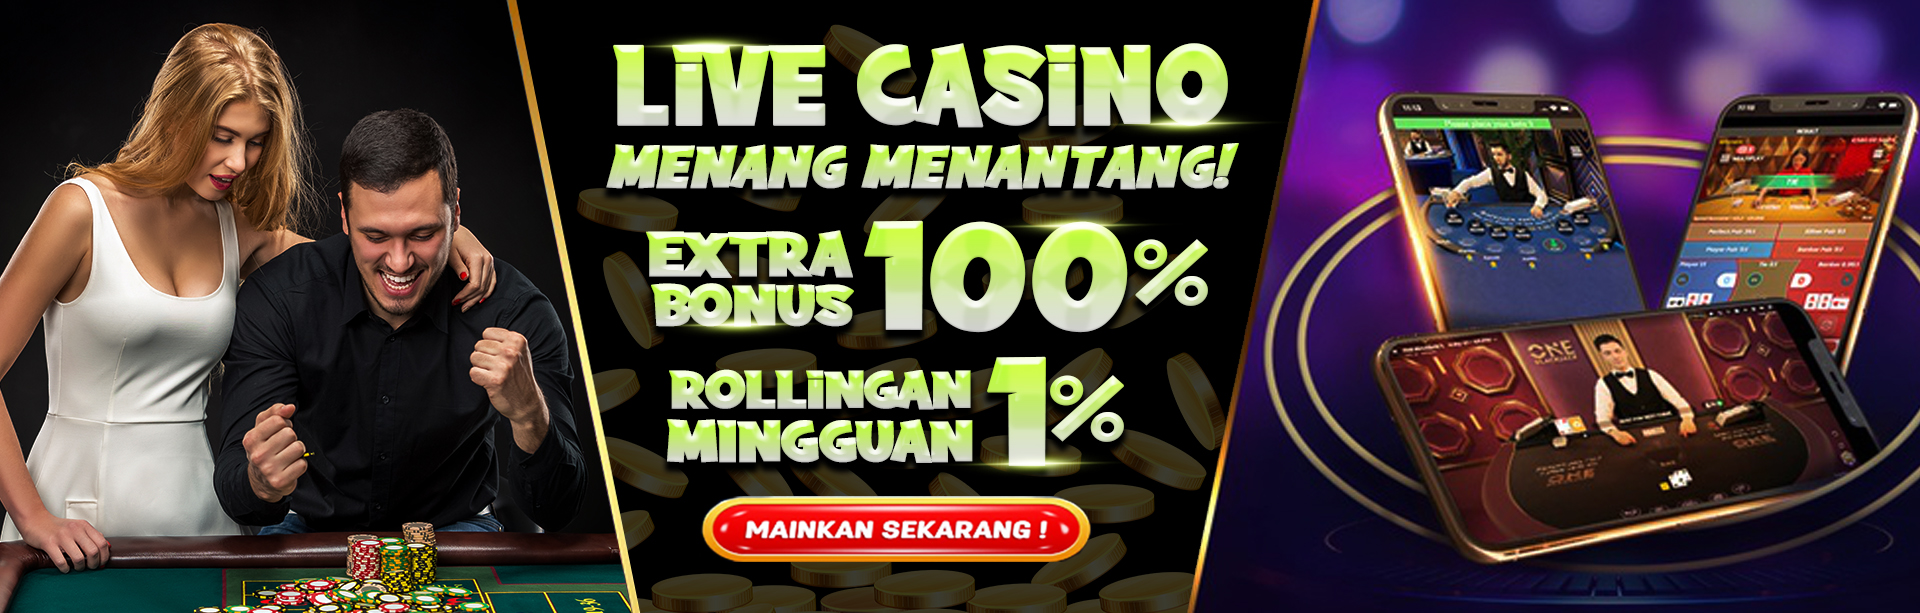 Casino Online Bonus Rollingan